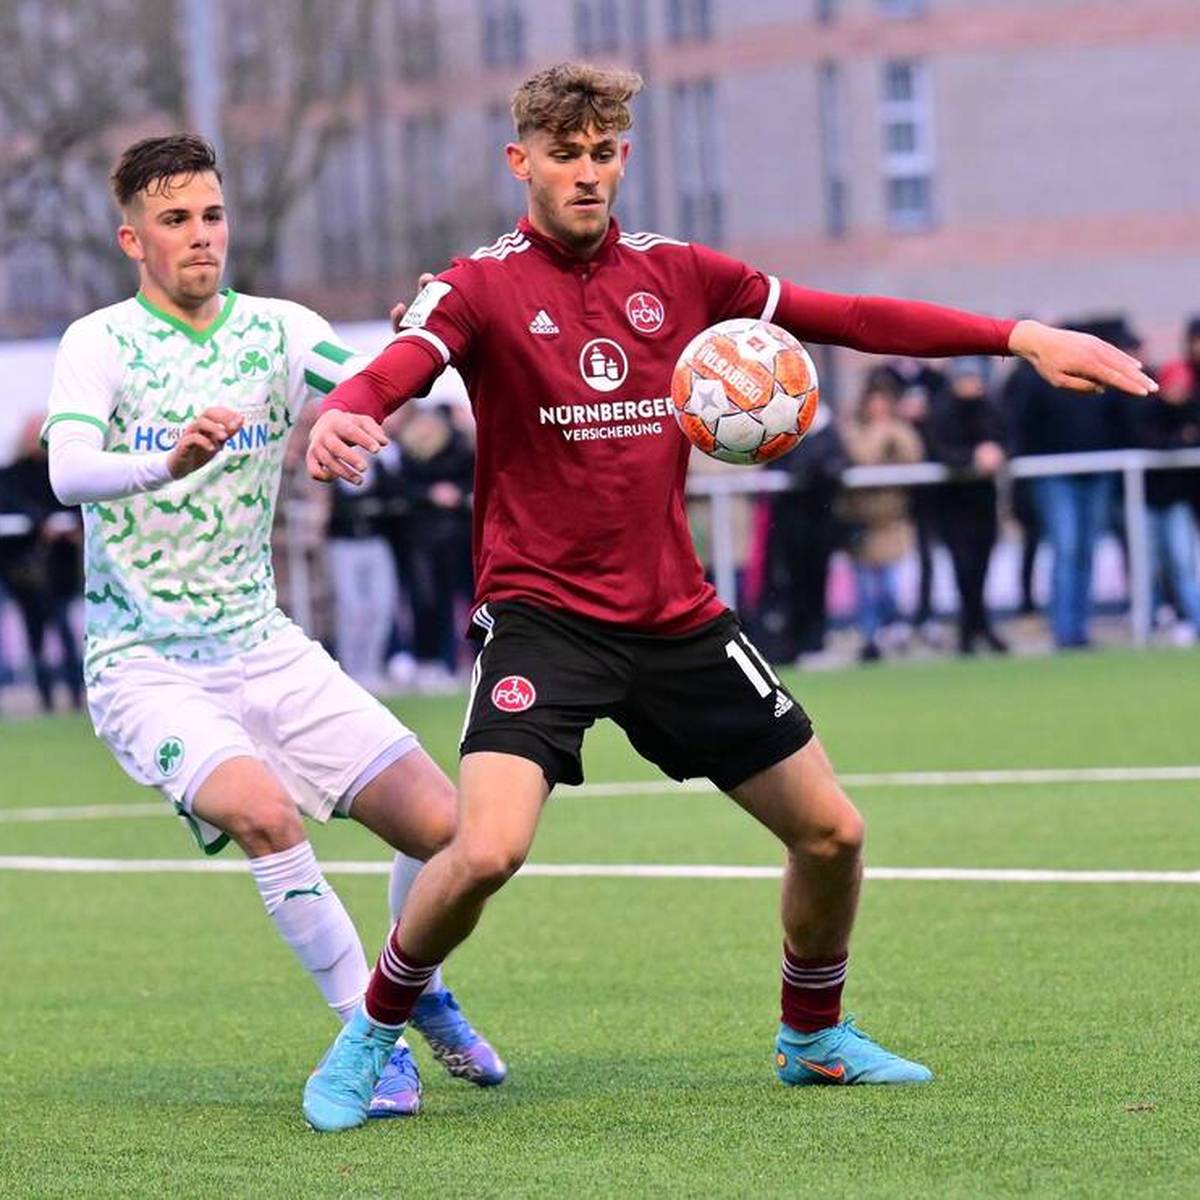 Leonardo Vonic ist beim 1. FC Nürnberg nach einer starken U19-Saison zu den Profis befördert worden. Ob der Angreifer bleibt, ist allerdings fraglich. Große Klubs haben ihre Fühler bereits nach ihm ausgestreckt. 